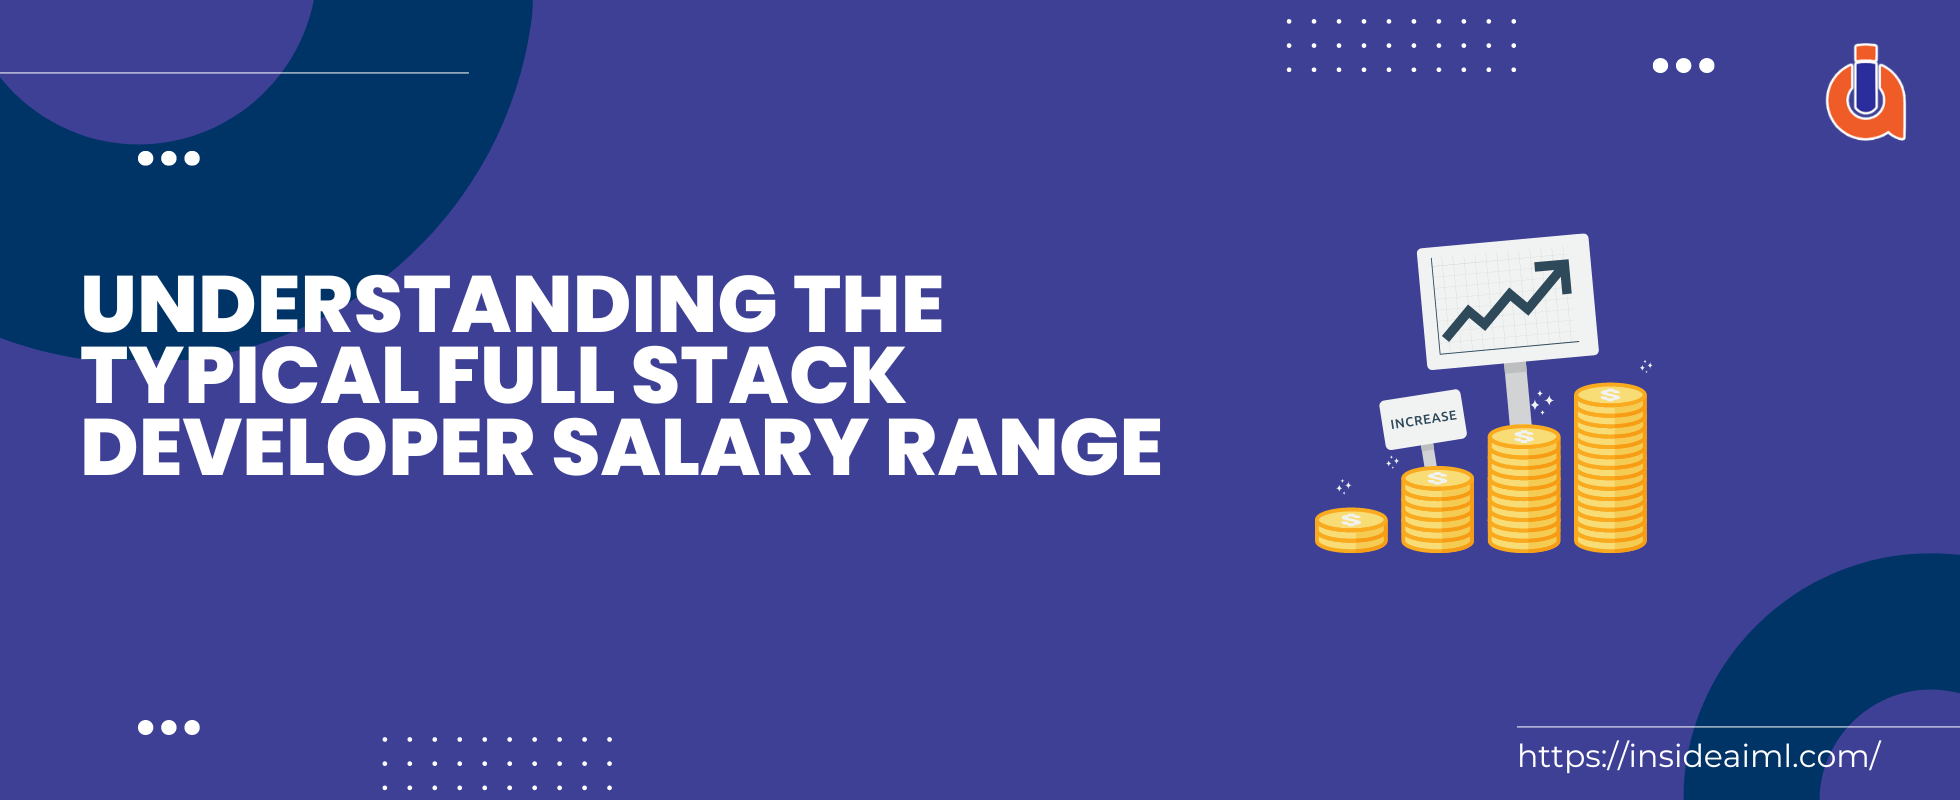 full stack developer salary - Blog